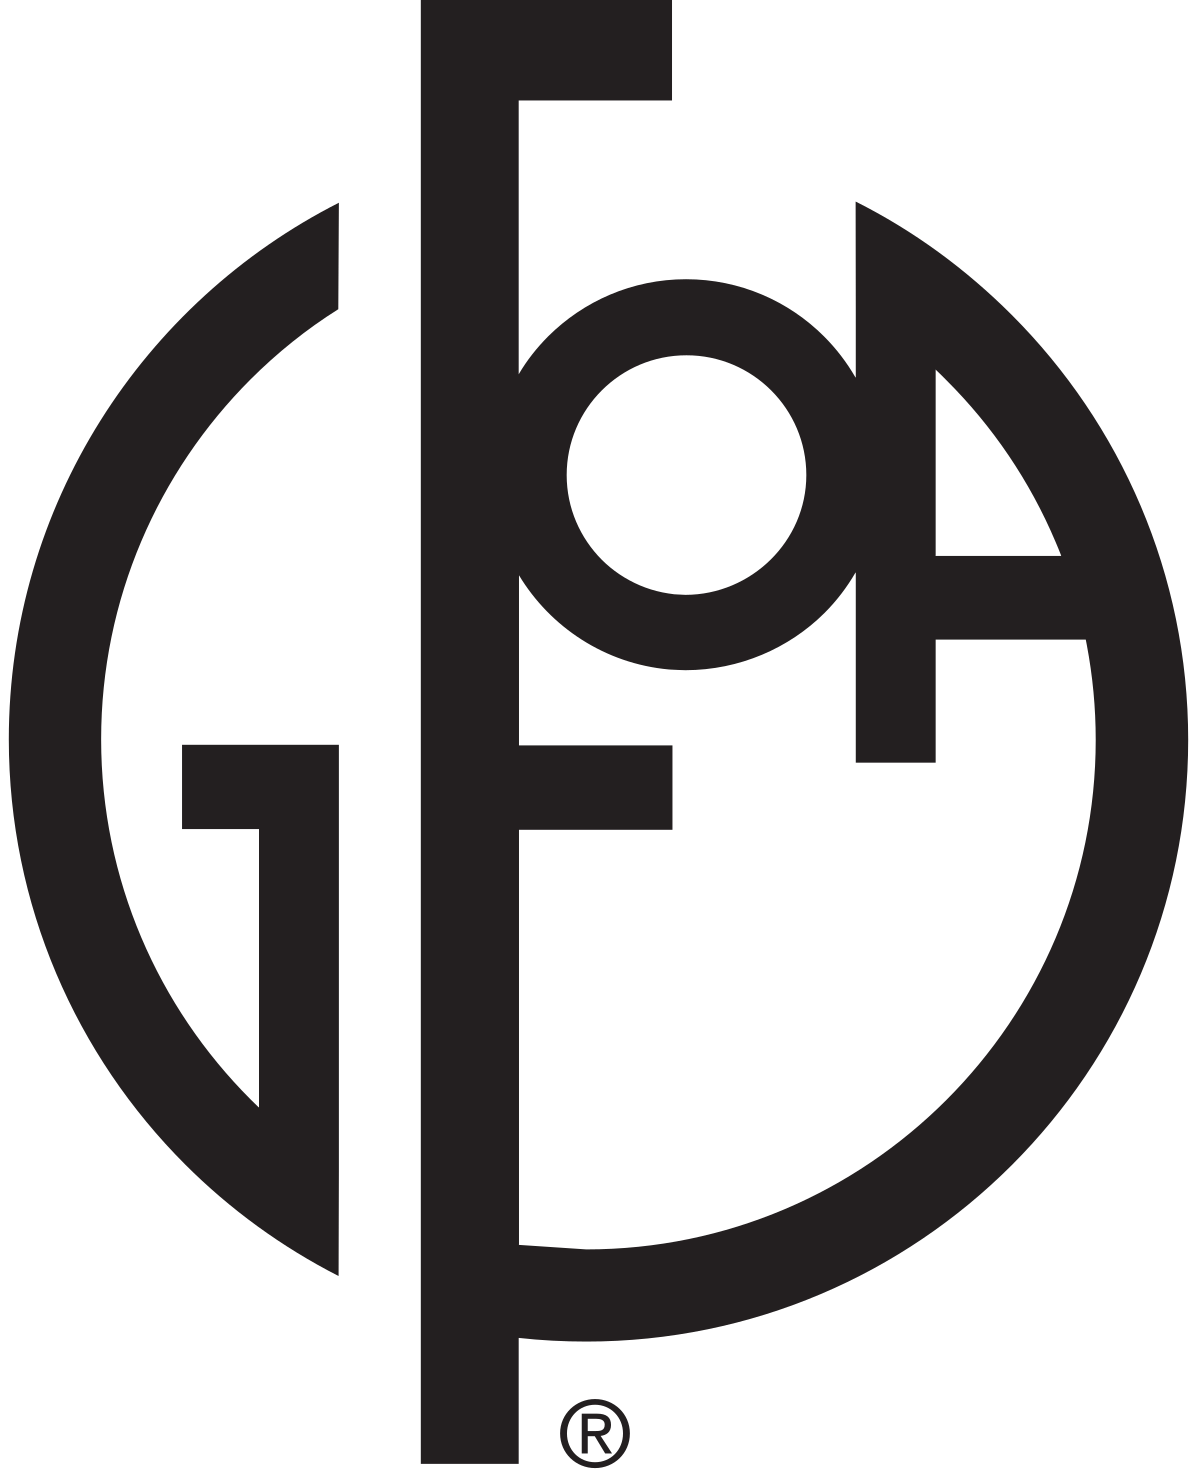 GFOA_logo.svg